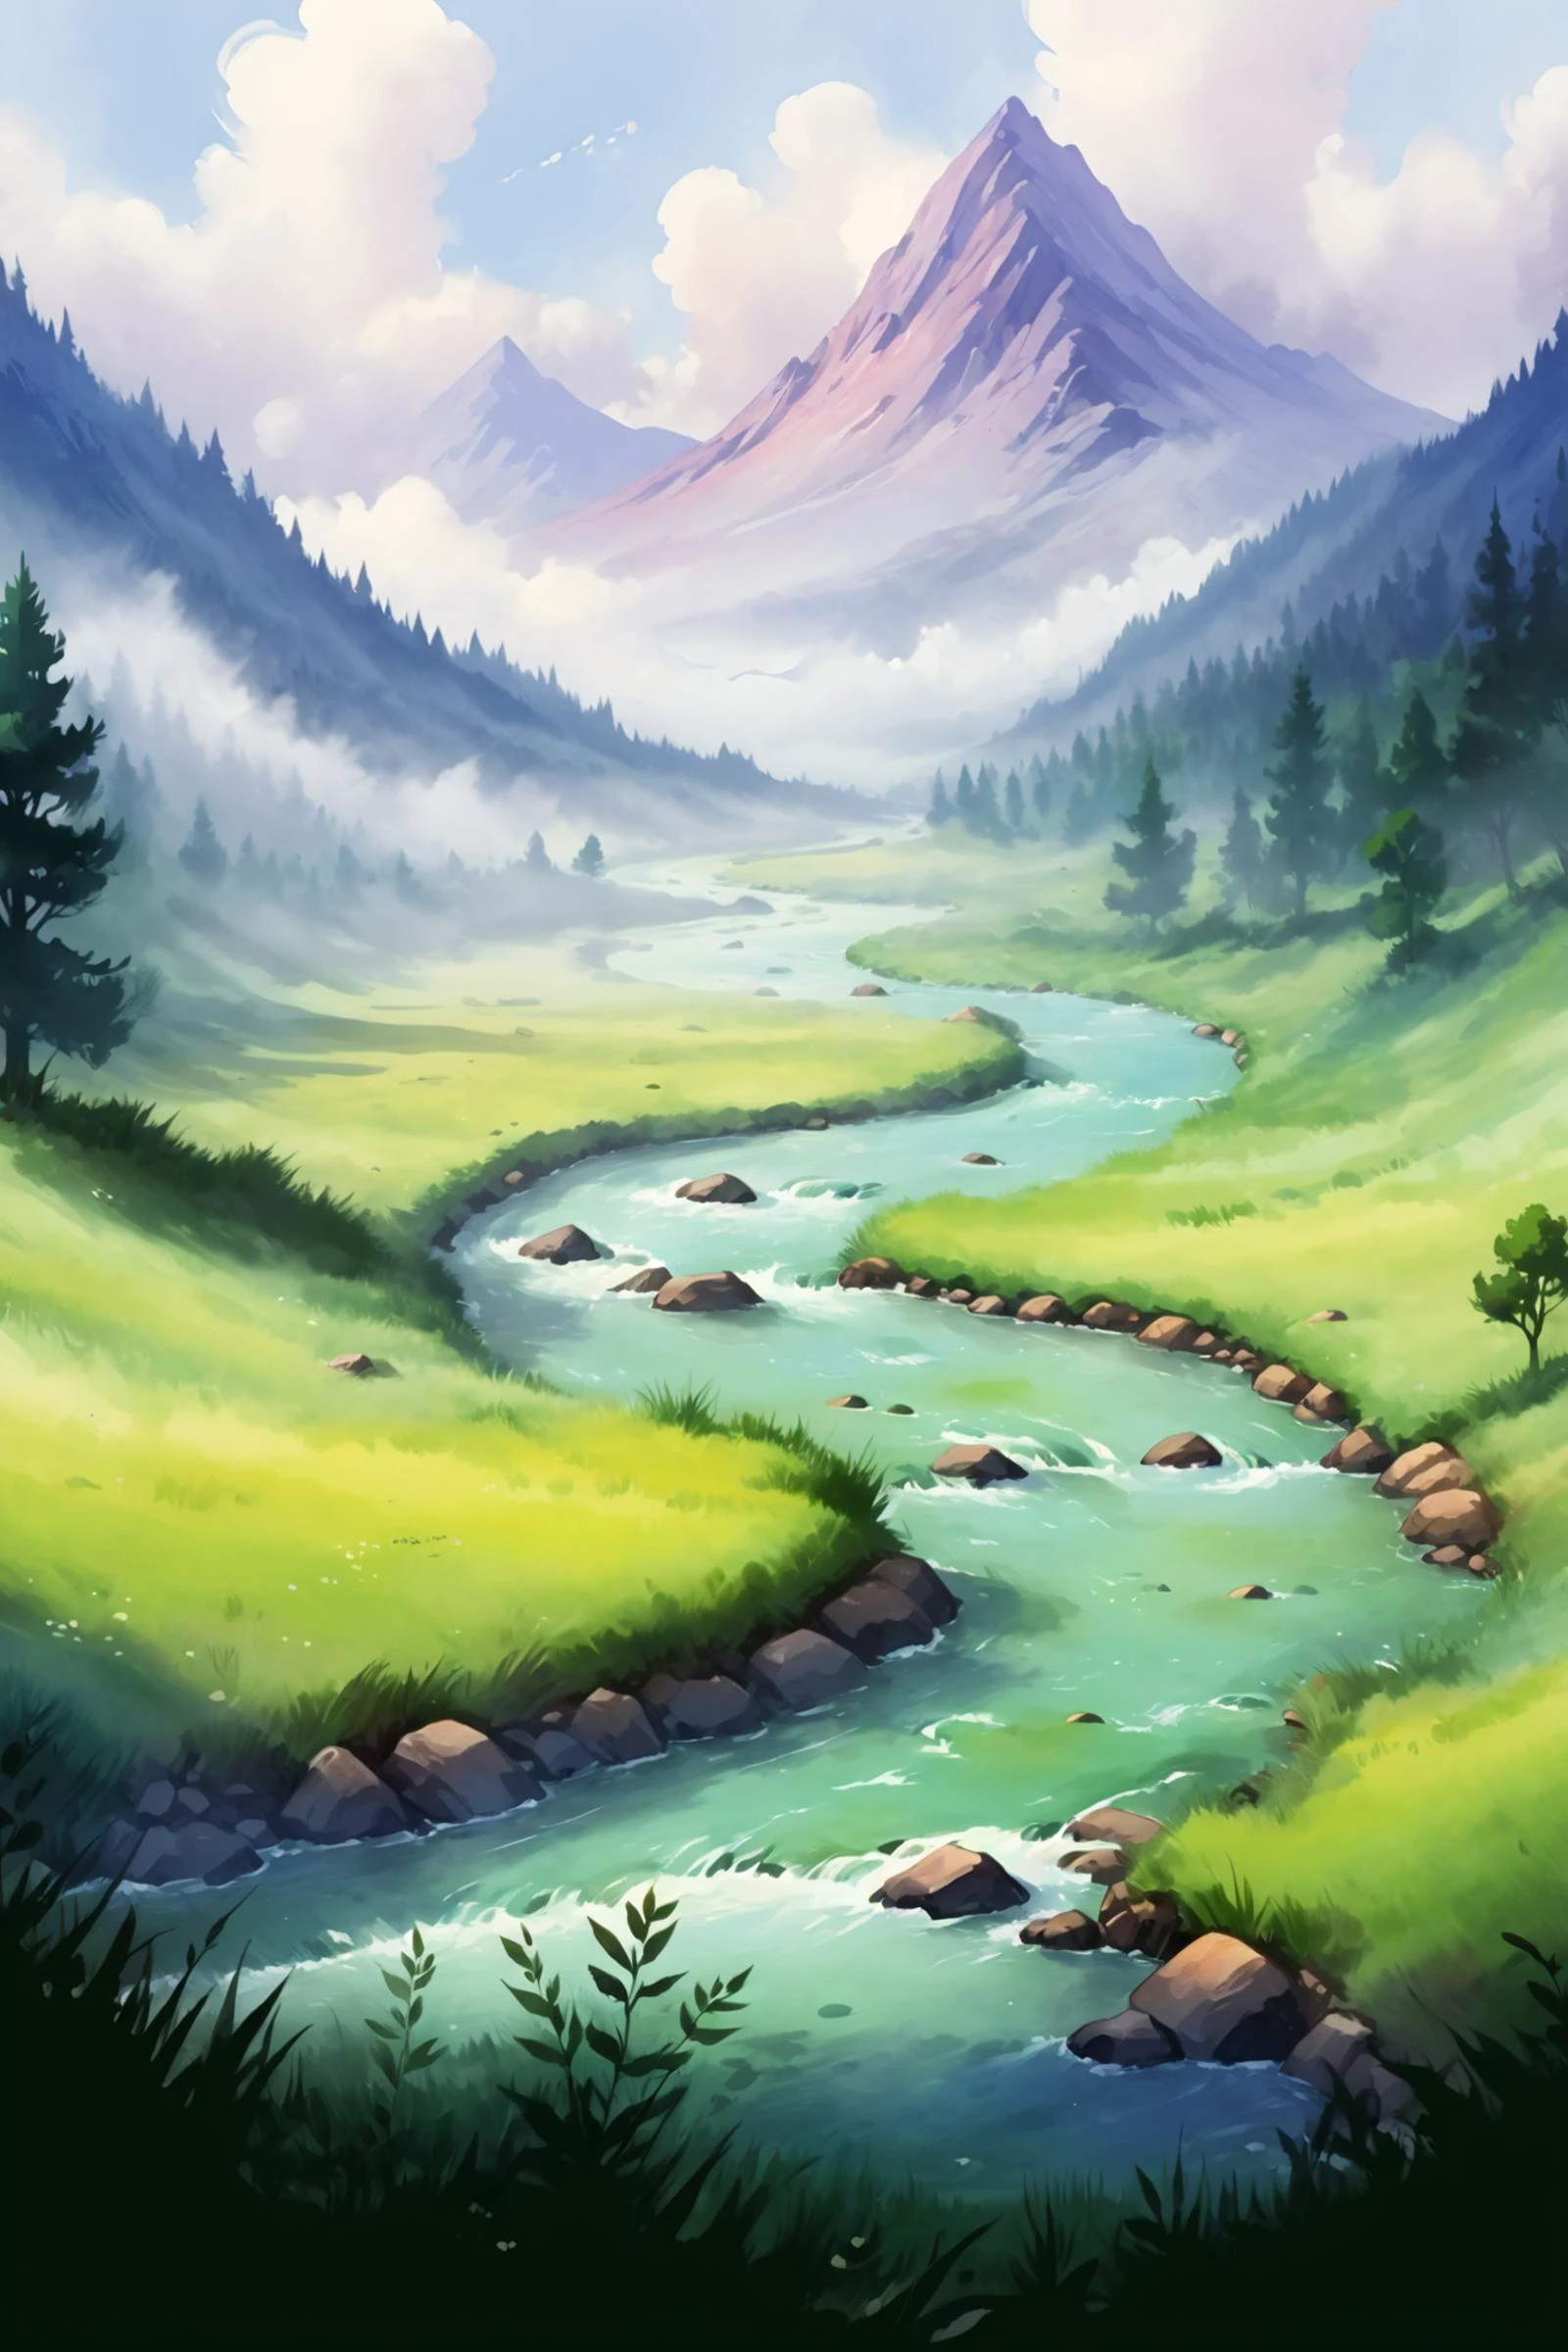 2D-Spielszene, Öl- und Aquarellmalerei, Zeichnung einer minimalistischen Landschaft, Fluss, Wiese, mist, Wolken, Berg, Baum, Wald, (Meisterwerk:1.2), beste Qualität